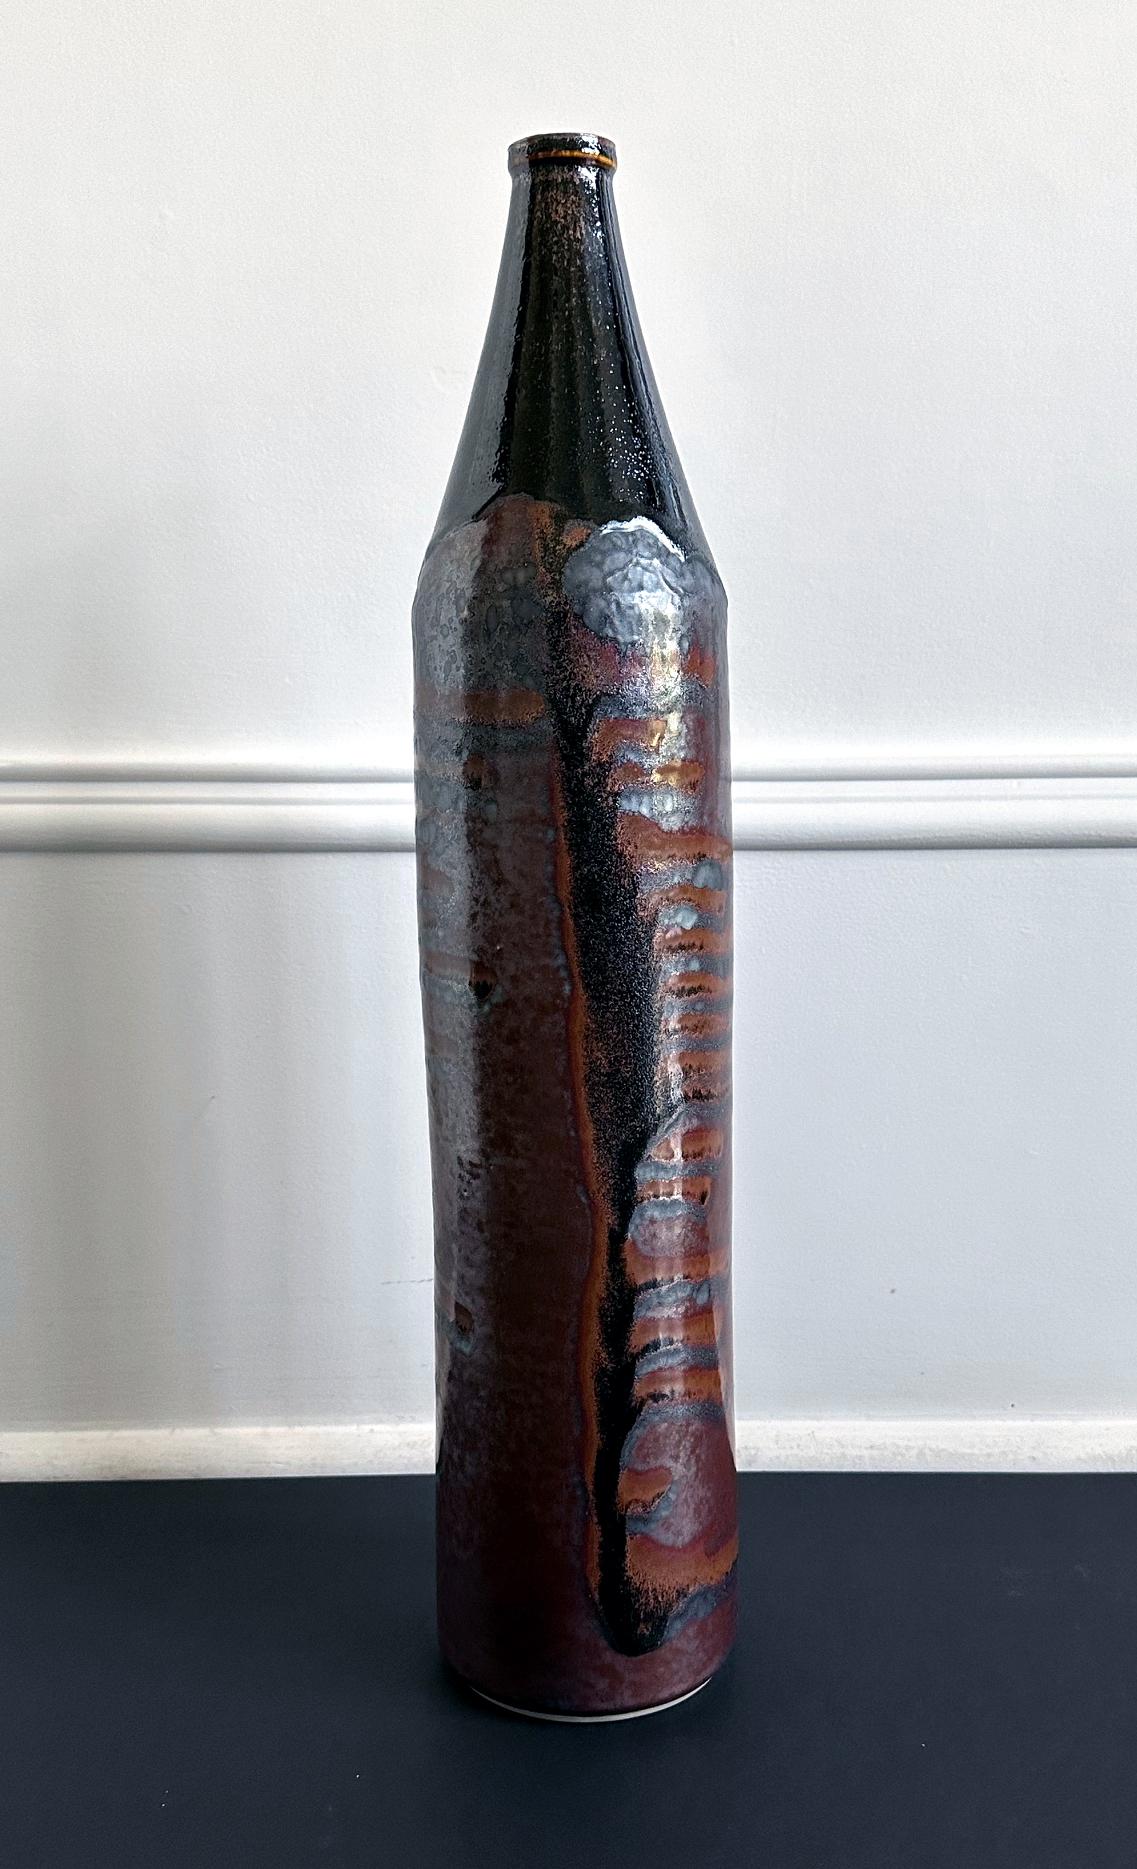 Eine frühe Keramikvase in Form eines Zylinders des Töpfers Bruder Thomas Bezanson (1929-2007). Die Vase ist mit 21,75 cm ungewöhnlich hoch und besticht durch ihre schlanke Silouette mit spitz zulaufendem Hals und Mundöffnung. Das Besondere an diesem